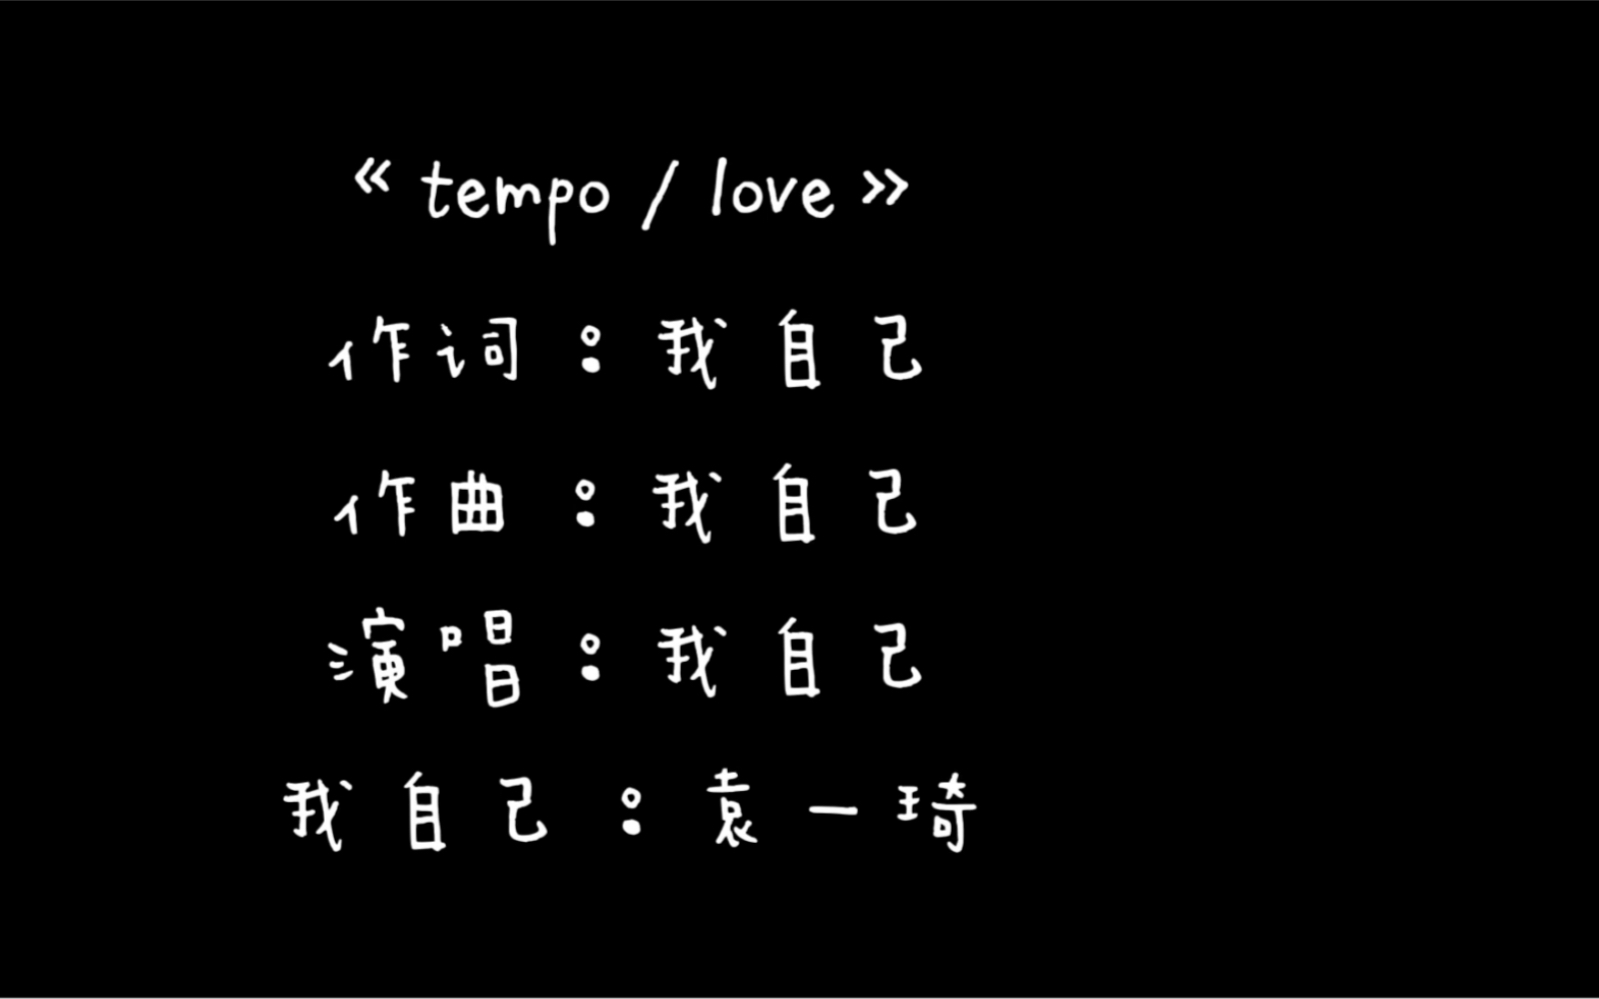 袁一琦的新歌最终demo 《tempo/love》 生活小视频